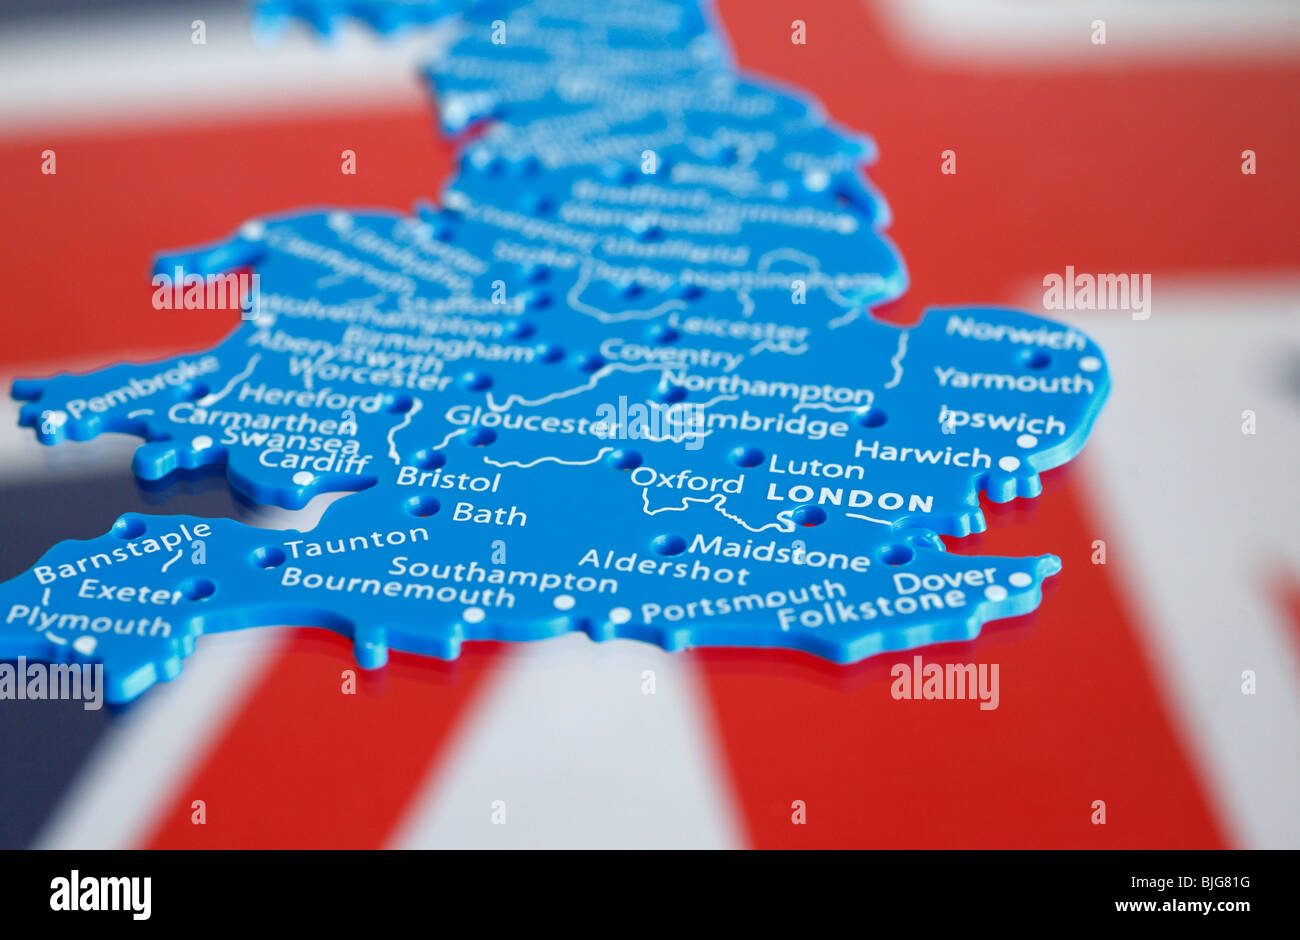 Kunststoff-Schablone des Vereinigten Königreichs gegen die Union Jack-Flagge gesetzt. Stockfoto